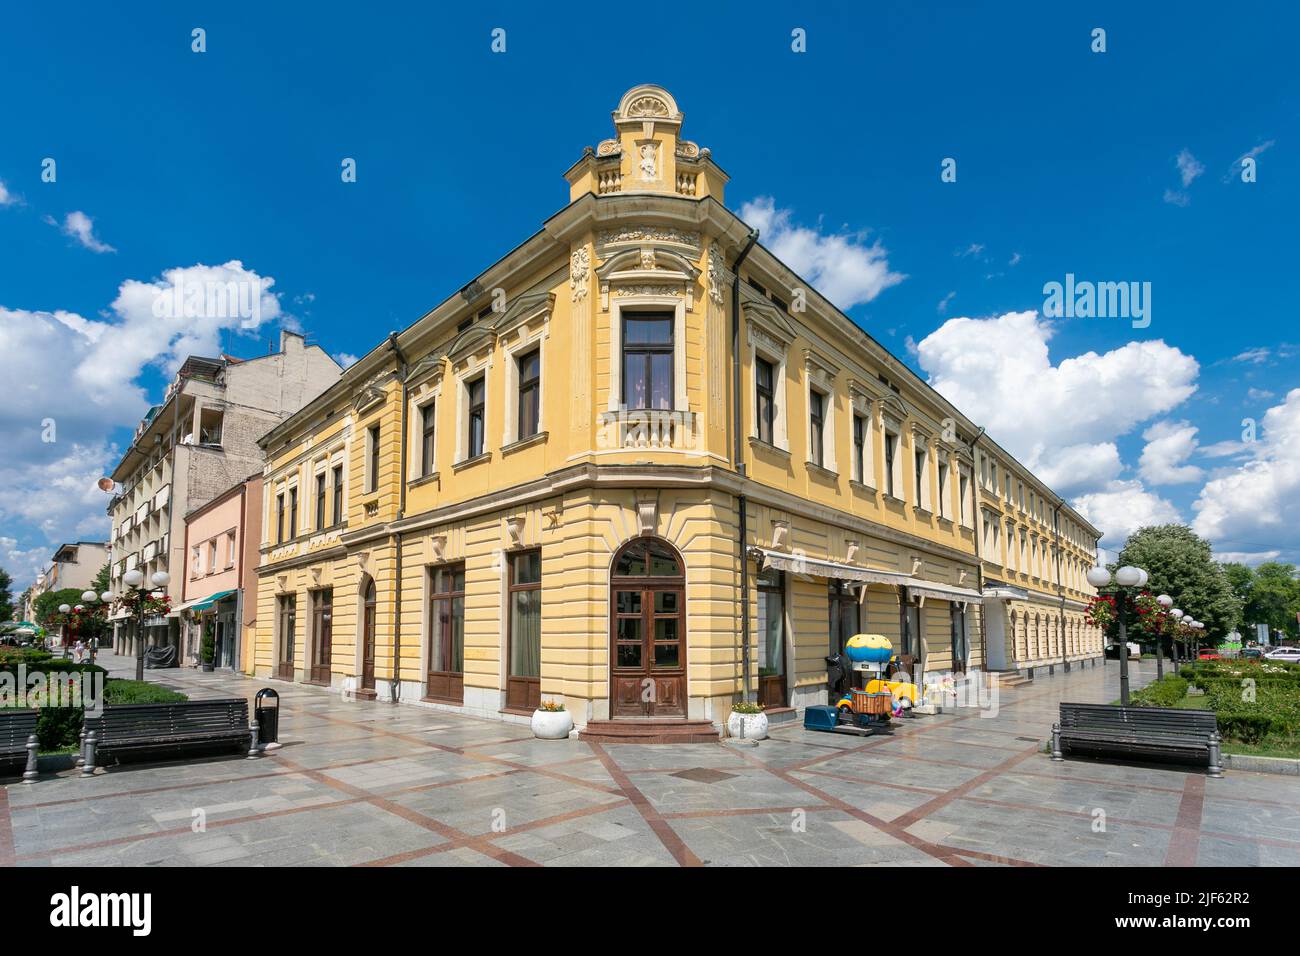 Valjevo, Serbie - 26 juin 2022: Grand hôtel - un bâtiment célèbre dans le centre de la zone piétonne et commerçante de Valjevo Banque D'Images